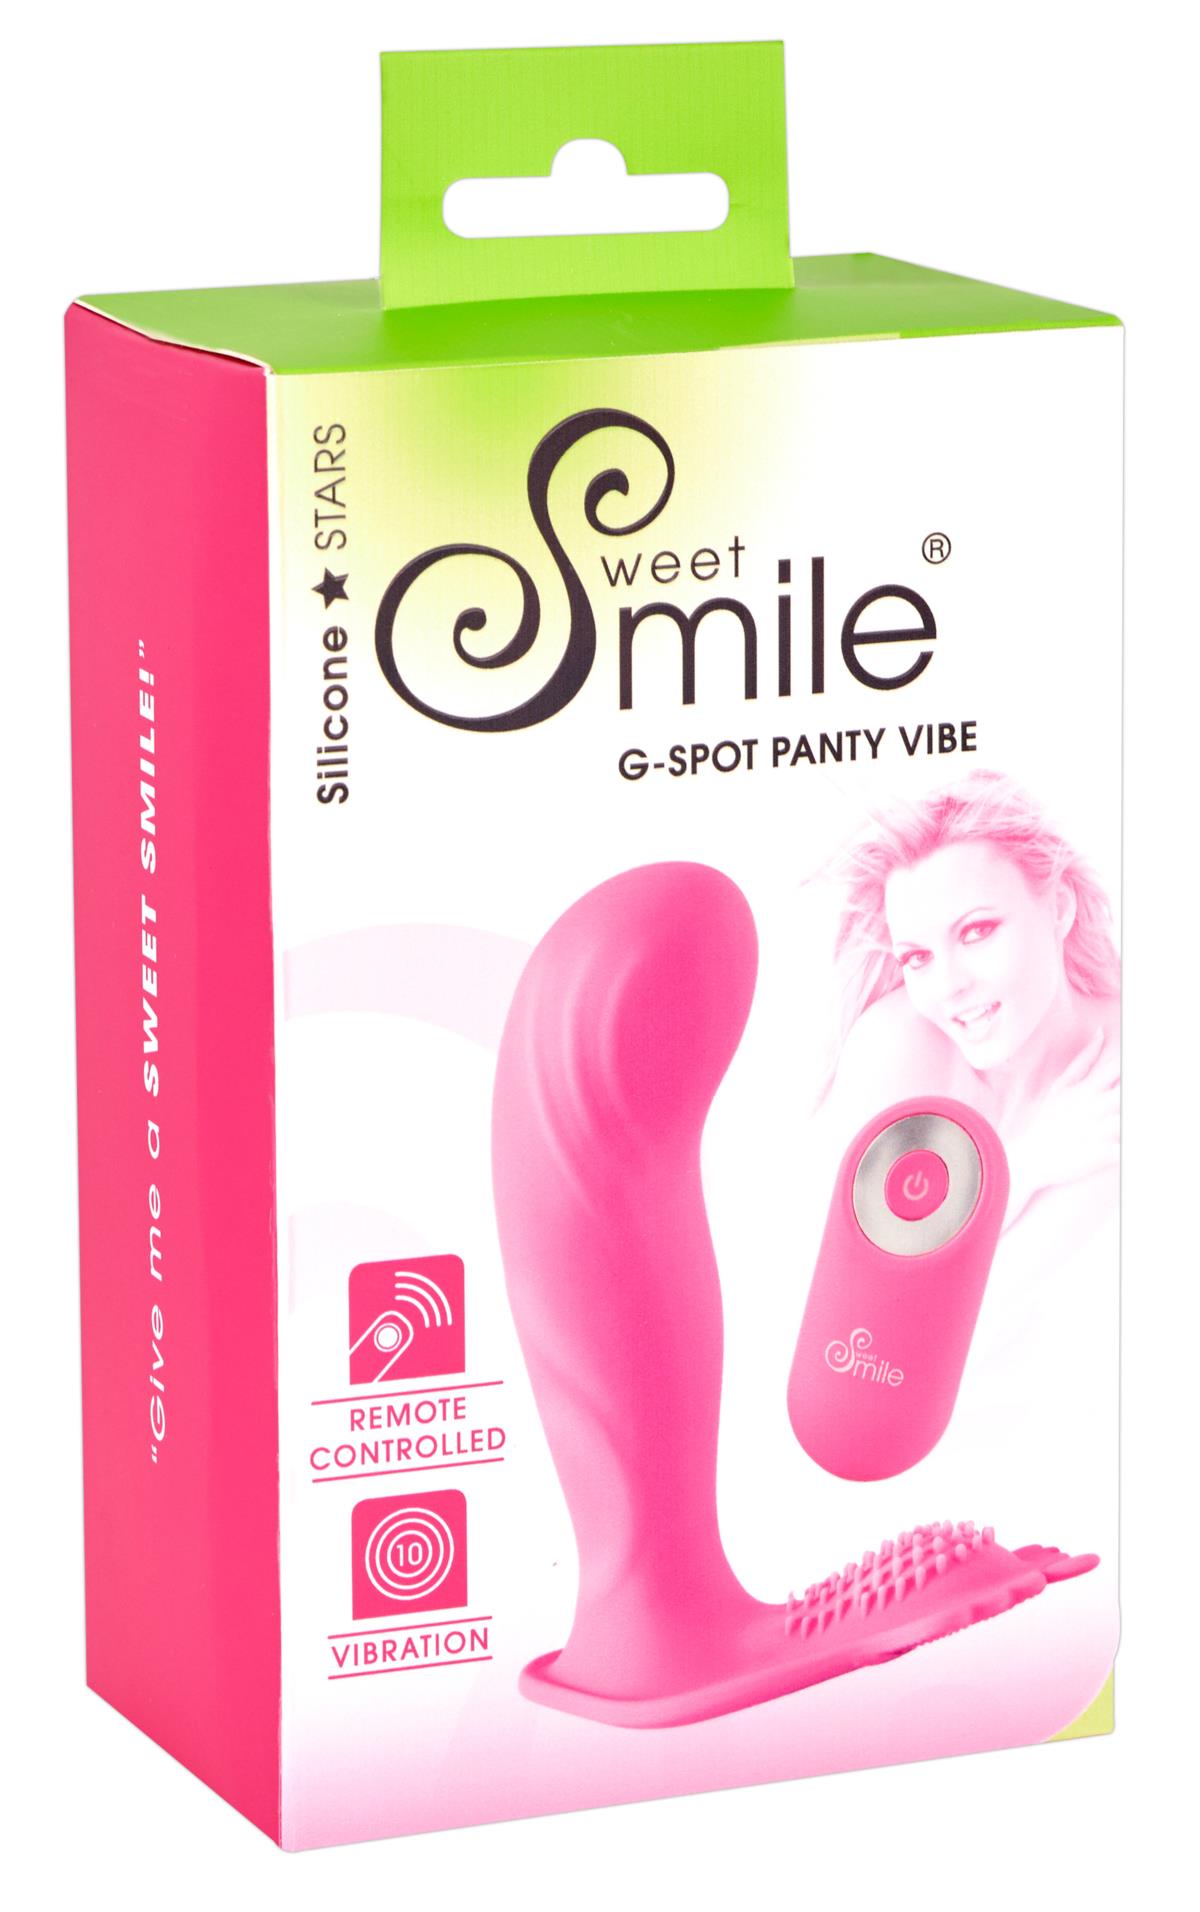 Verkaufskatalog Sweet Smile G-spot Vibe Panty